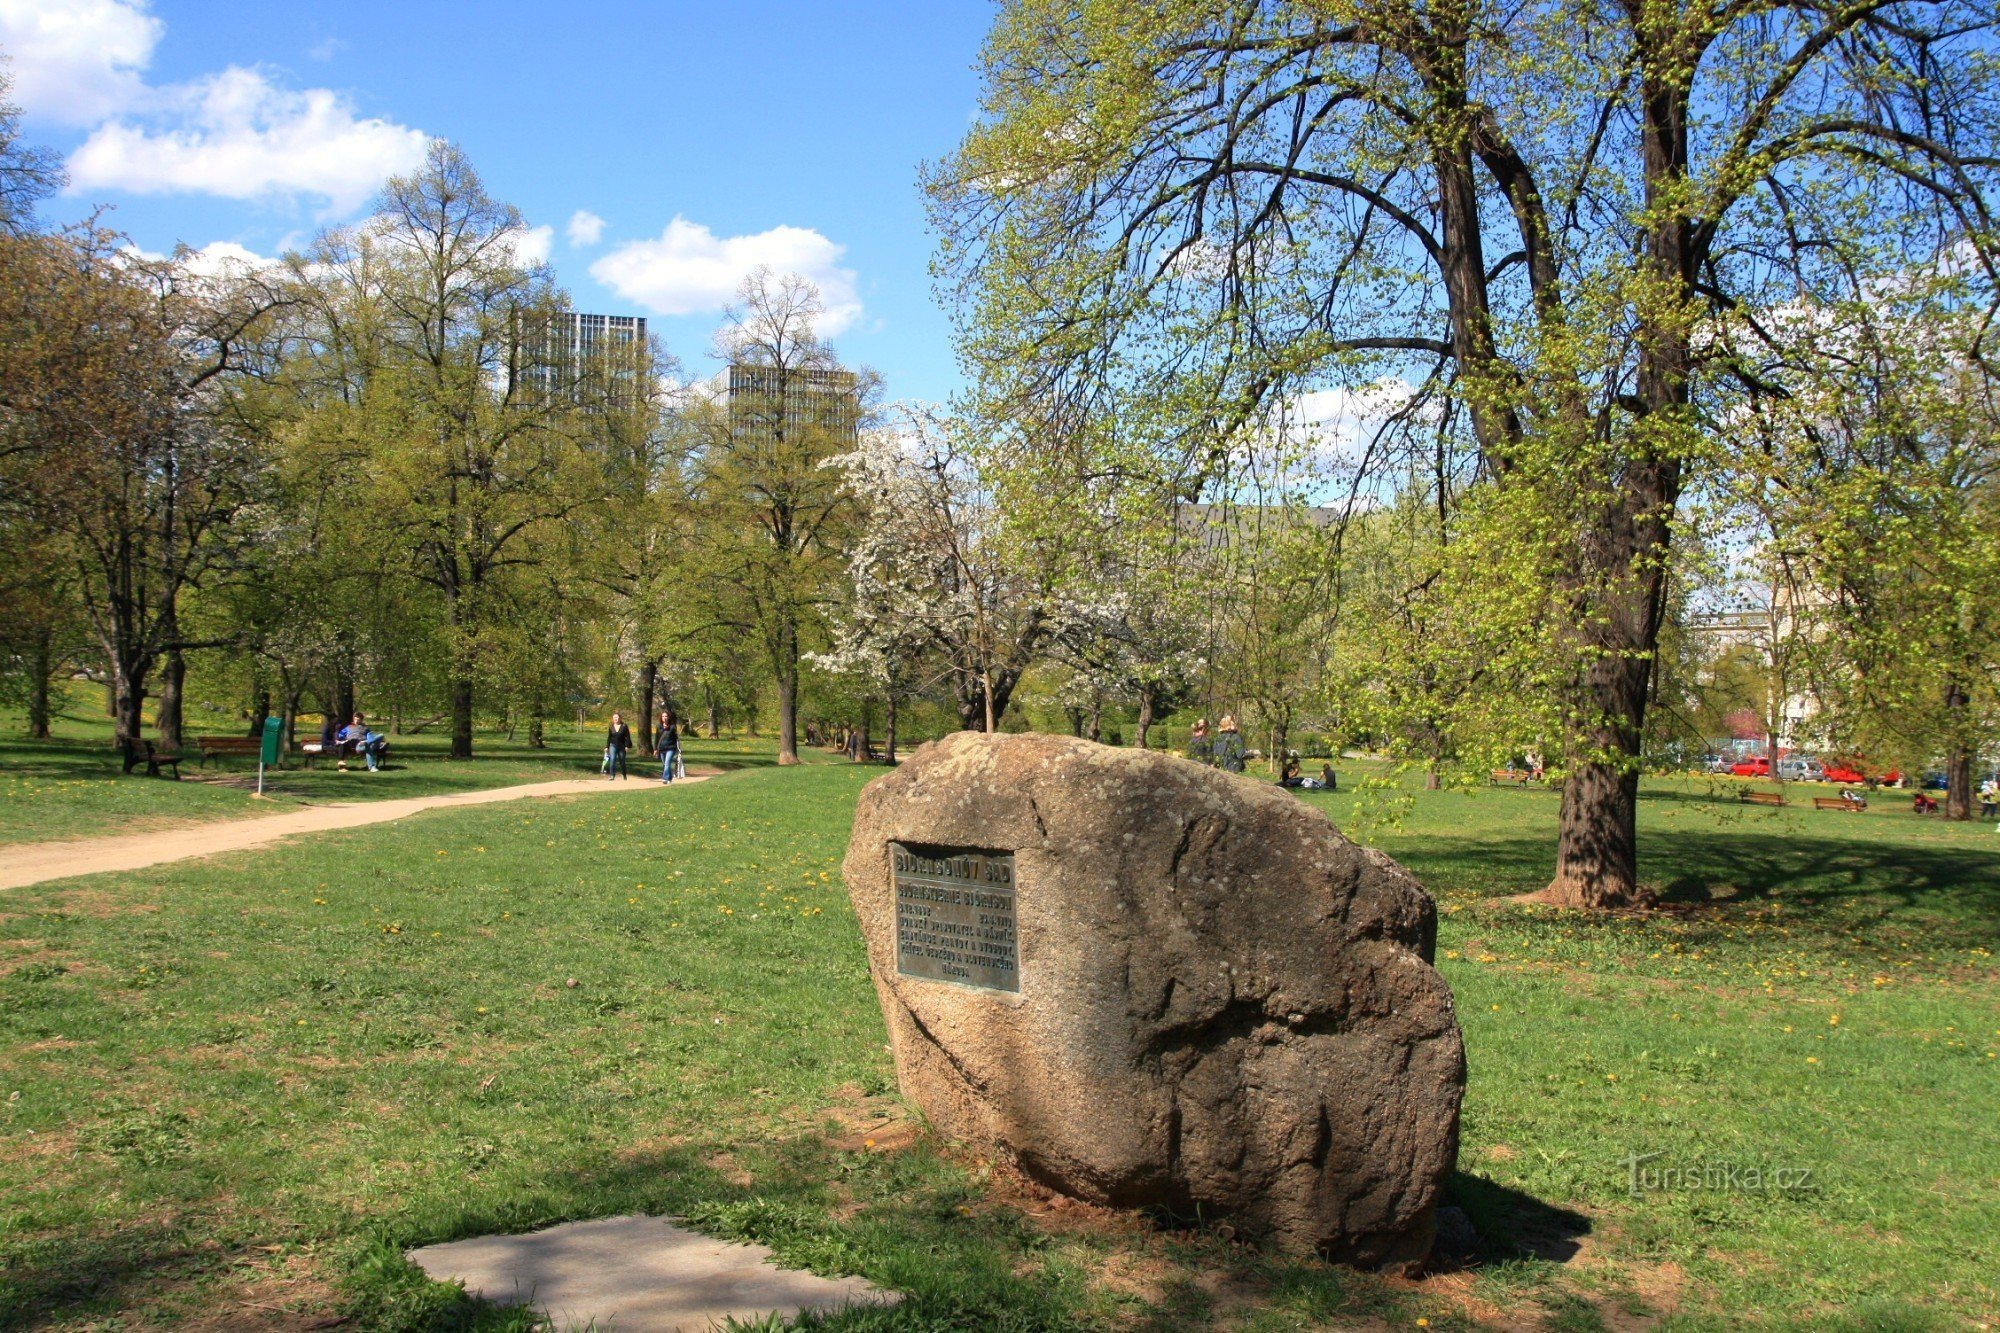 Khu vườn Björsen - một phiến đá với tấm bảng kỷ niệm